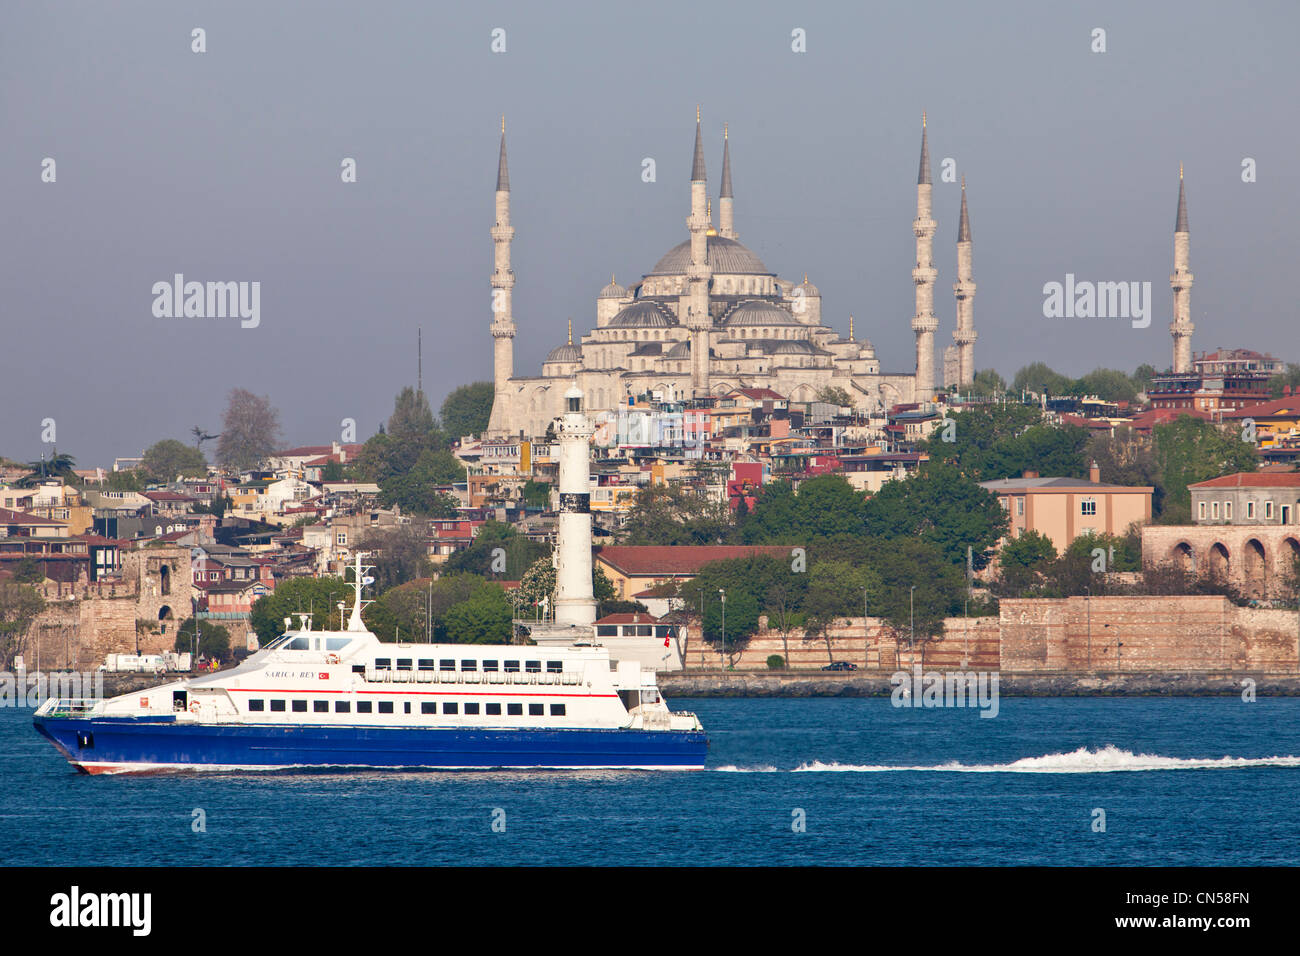 Turchia, Istanbul, un traghetto sul Bosforo e la Moschea di Sultanahmet con il Sultan Ahmet Camii (moschea blu) Foto Stock